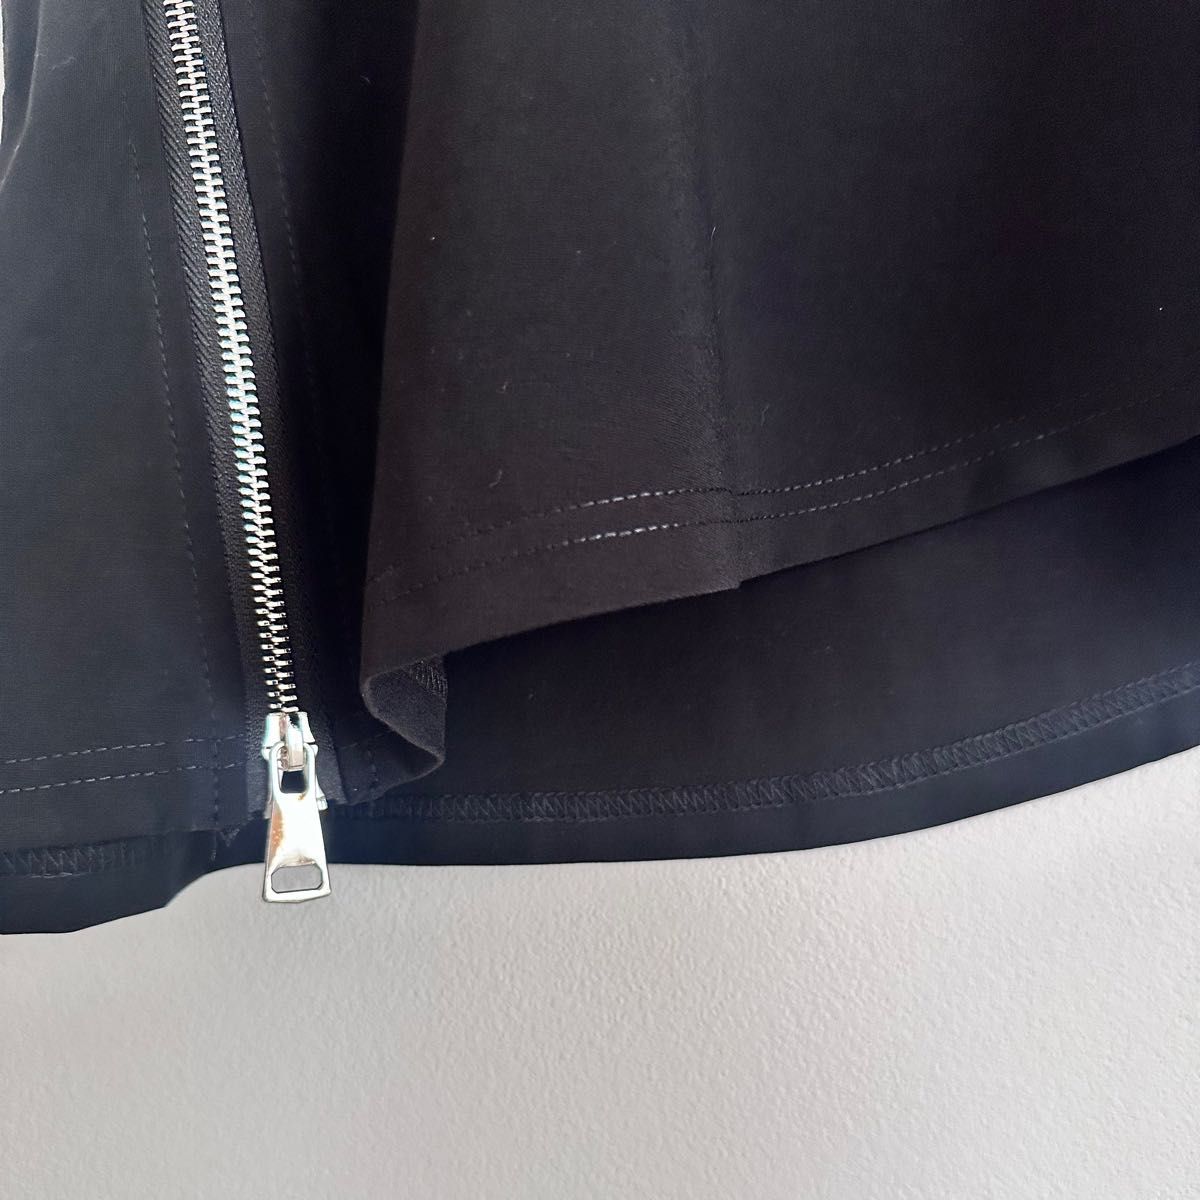 アシンメトリー サイドジップ フレンチ Tシャツ & スカート ファスナー 装飾 黒 ブラック ノースリーブ